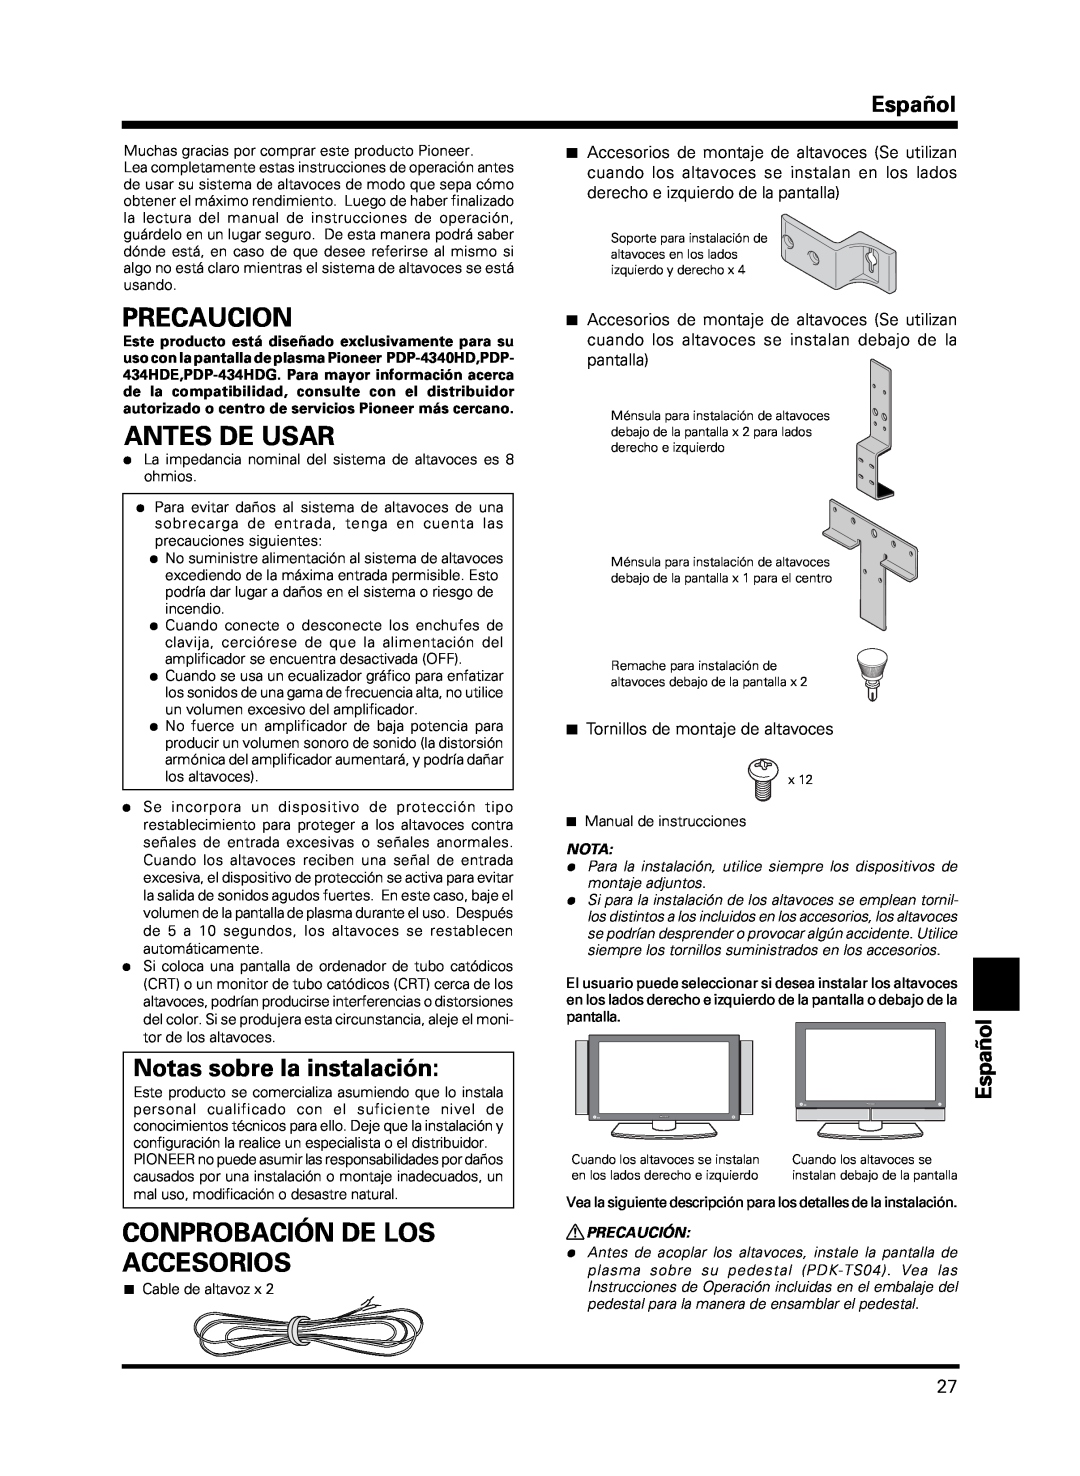 Pioneer PDP-S13-LR manual Precaucion, Antes De Usar, Conprobación De Los Accesorios, Notas sobre la instalación, Español 